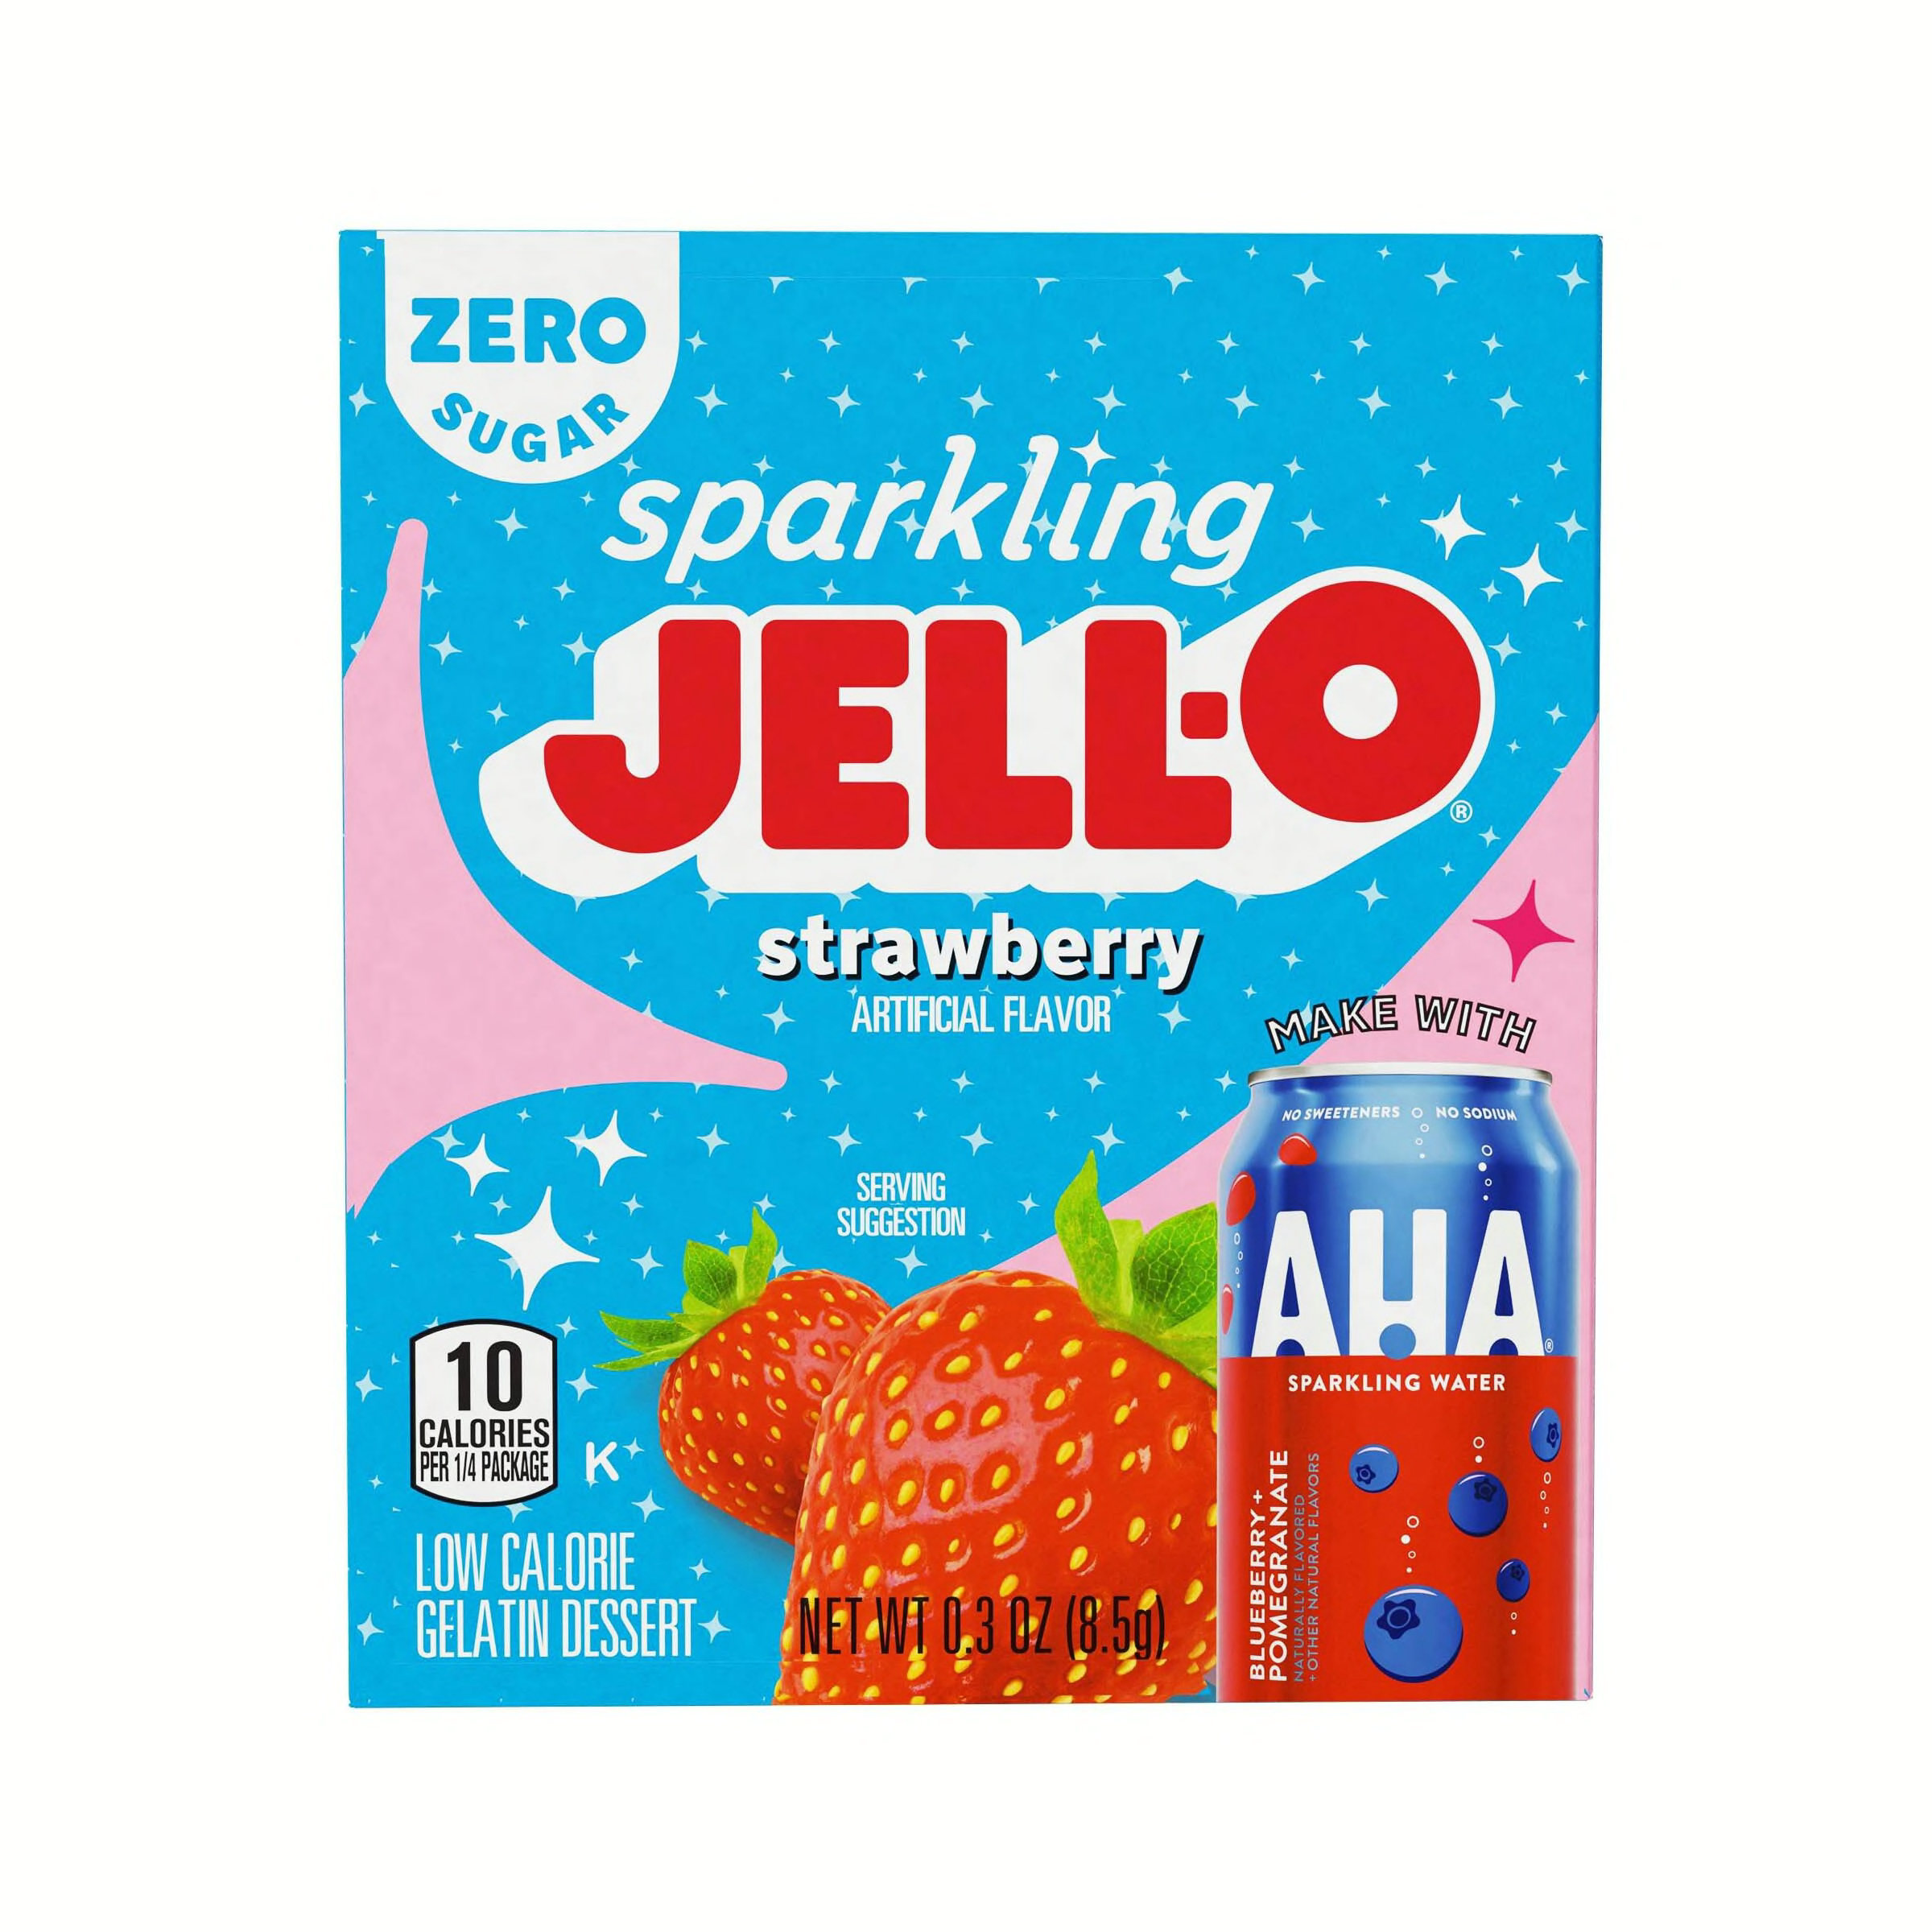 Sparkling Jell-O